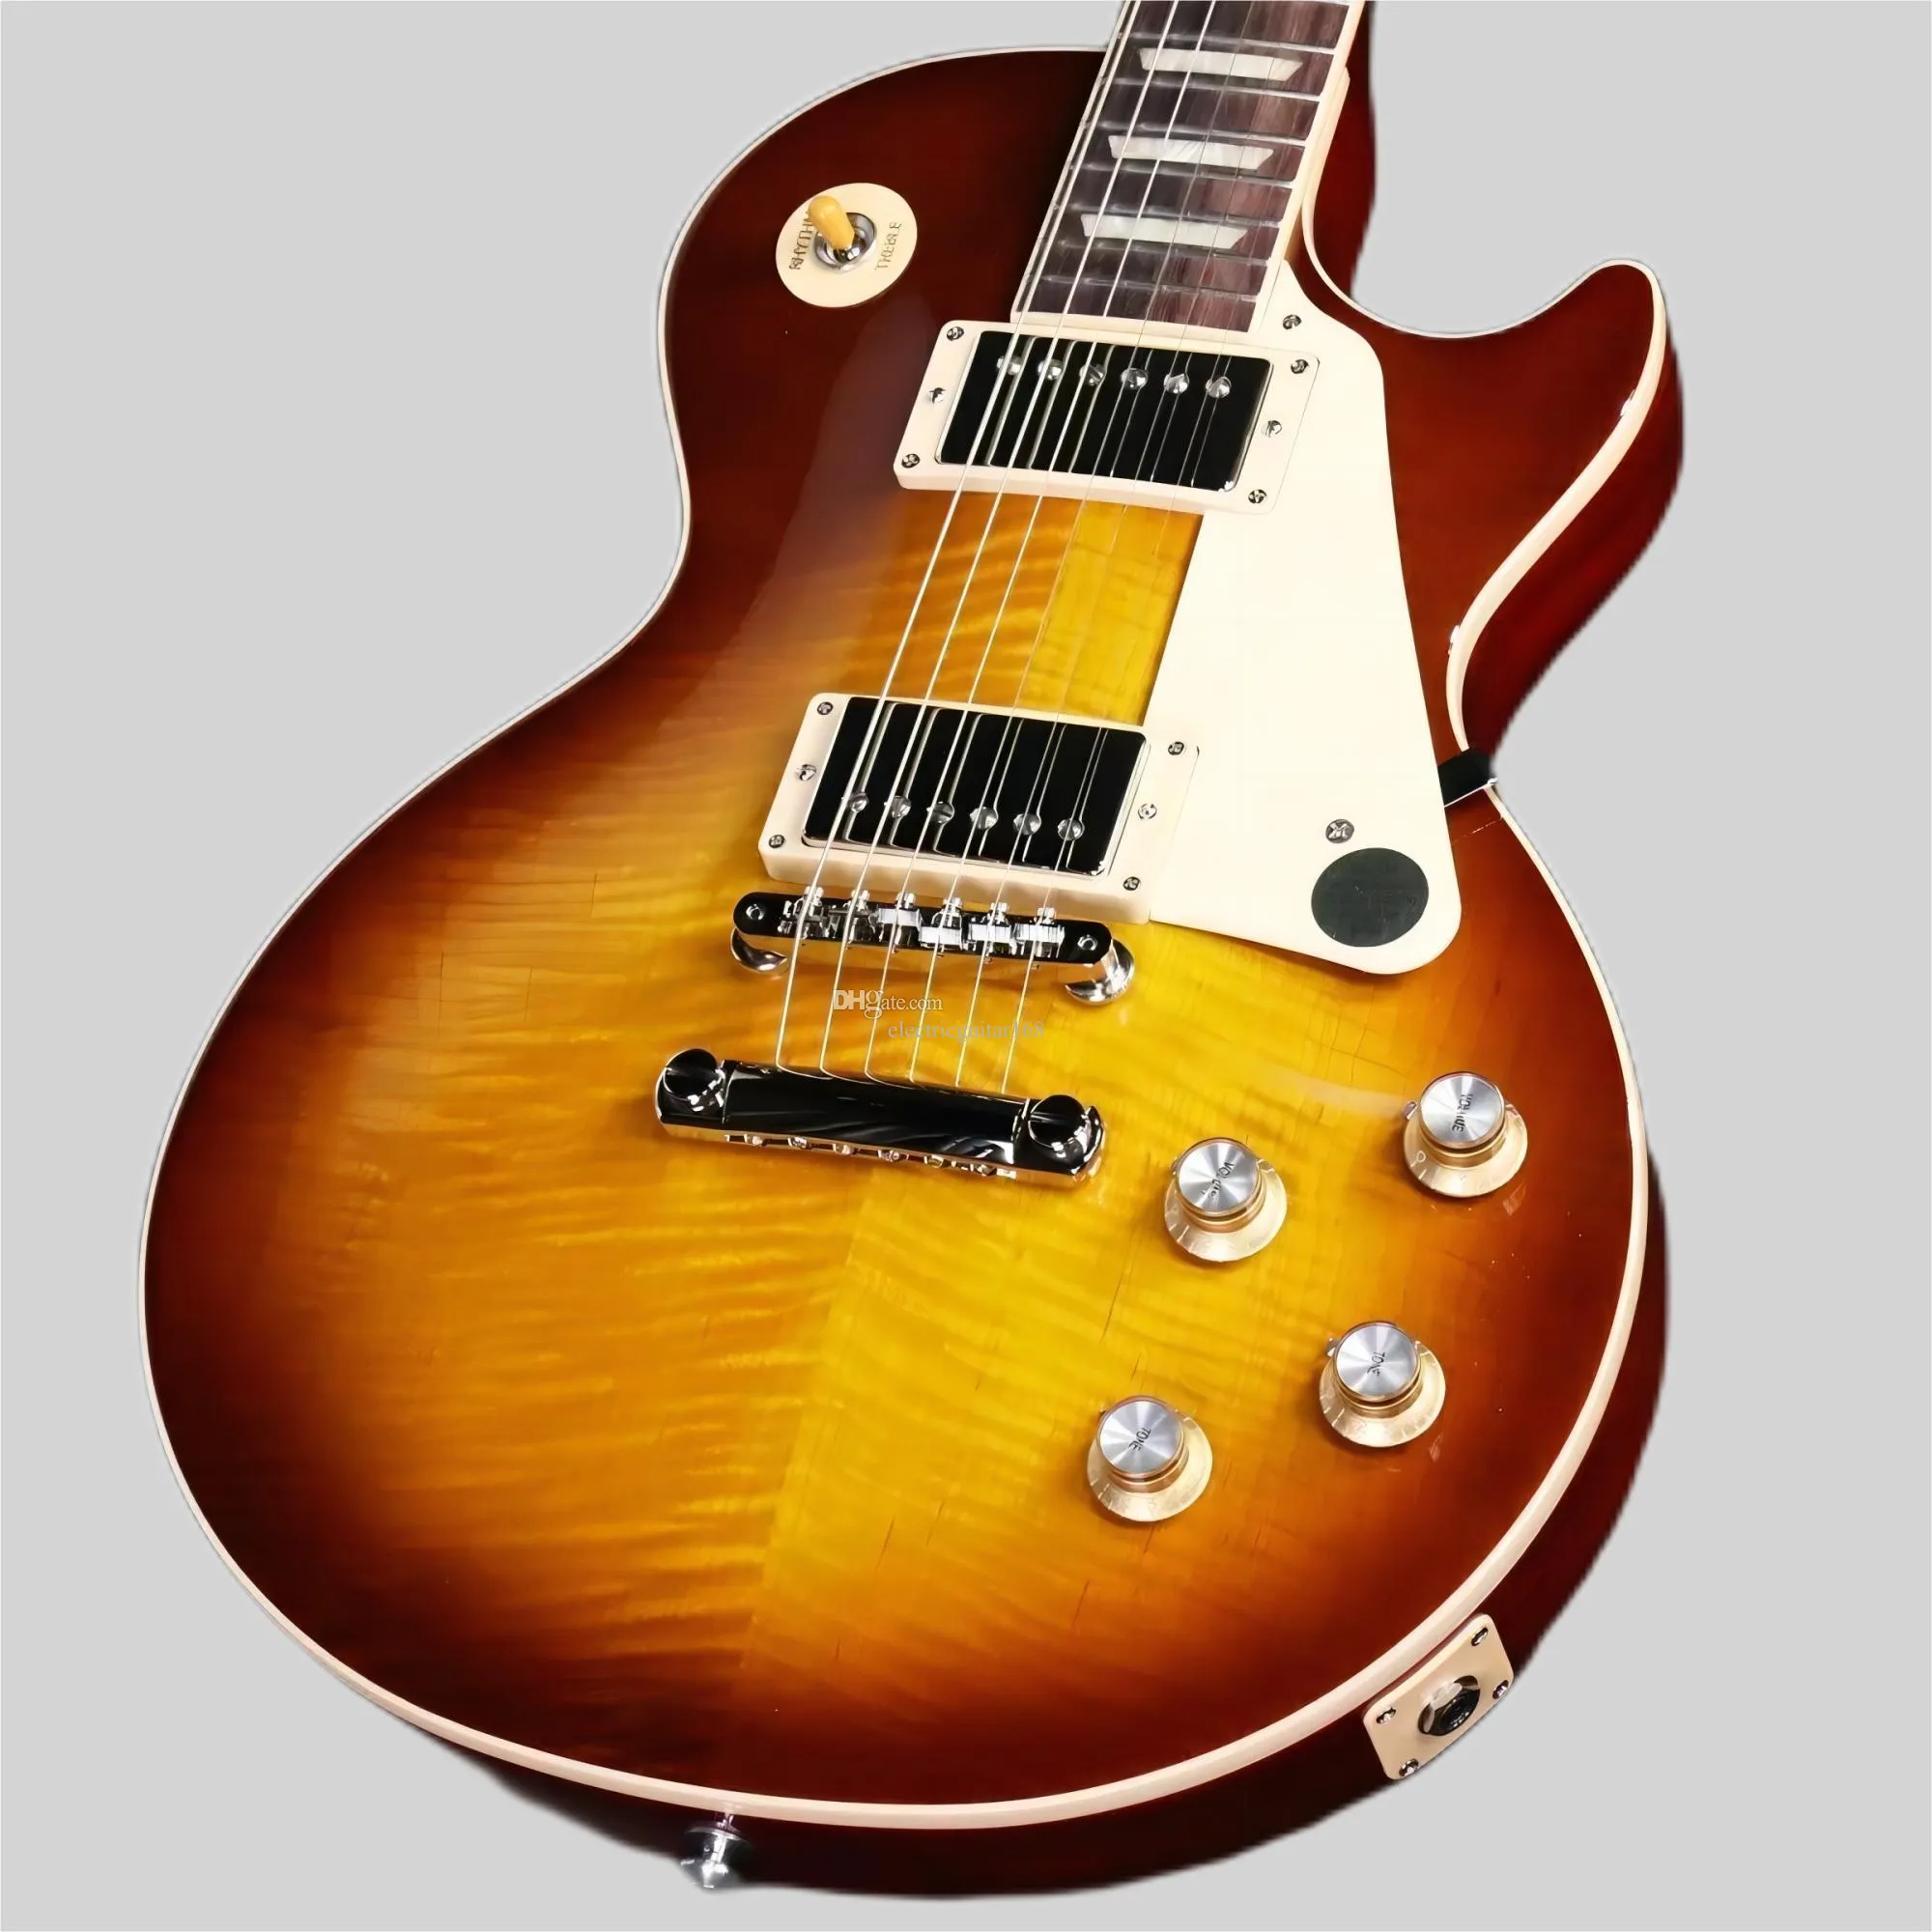 la migliore chitarra elettrica Paul Standard degli anni '60 Iced Tea n. 3 di fabbrica, come nelle immagini